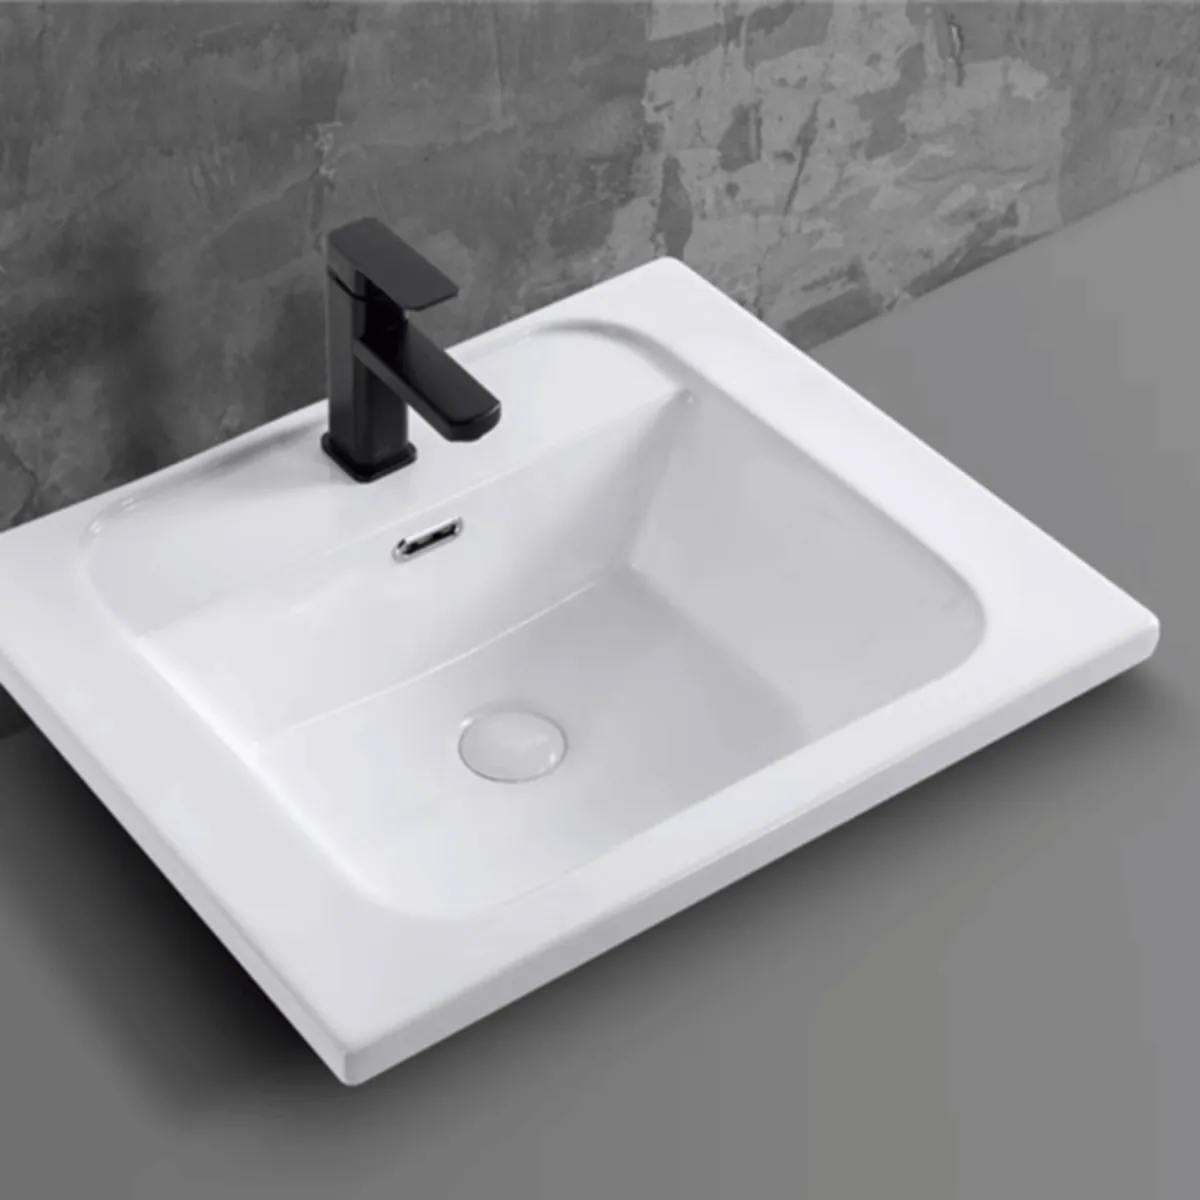 Tận hưởng sự tinh tế và hiện đại với chậu rửa lavabo âm bàn PLD-668D của chúng tôi.